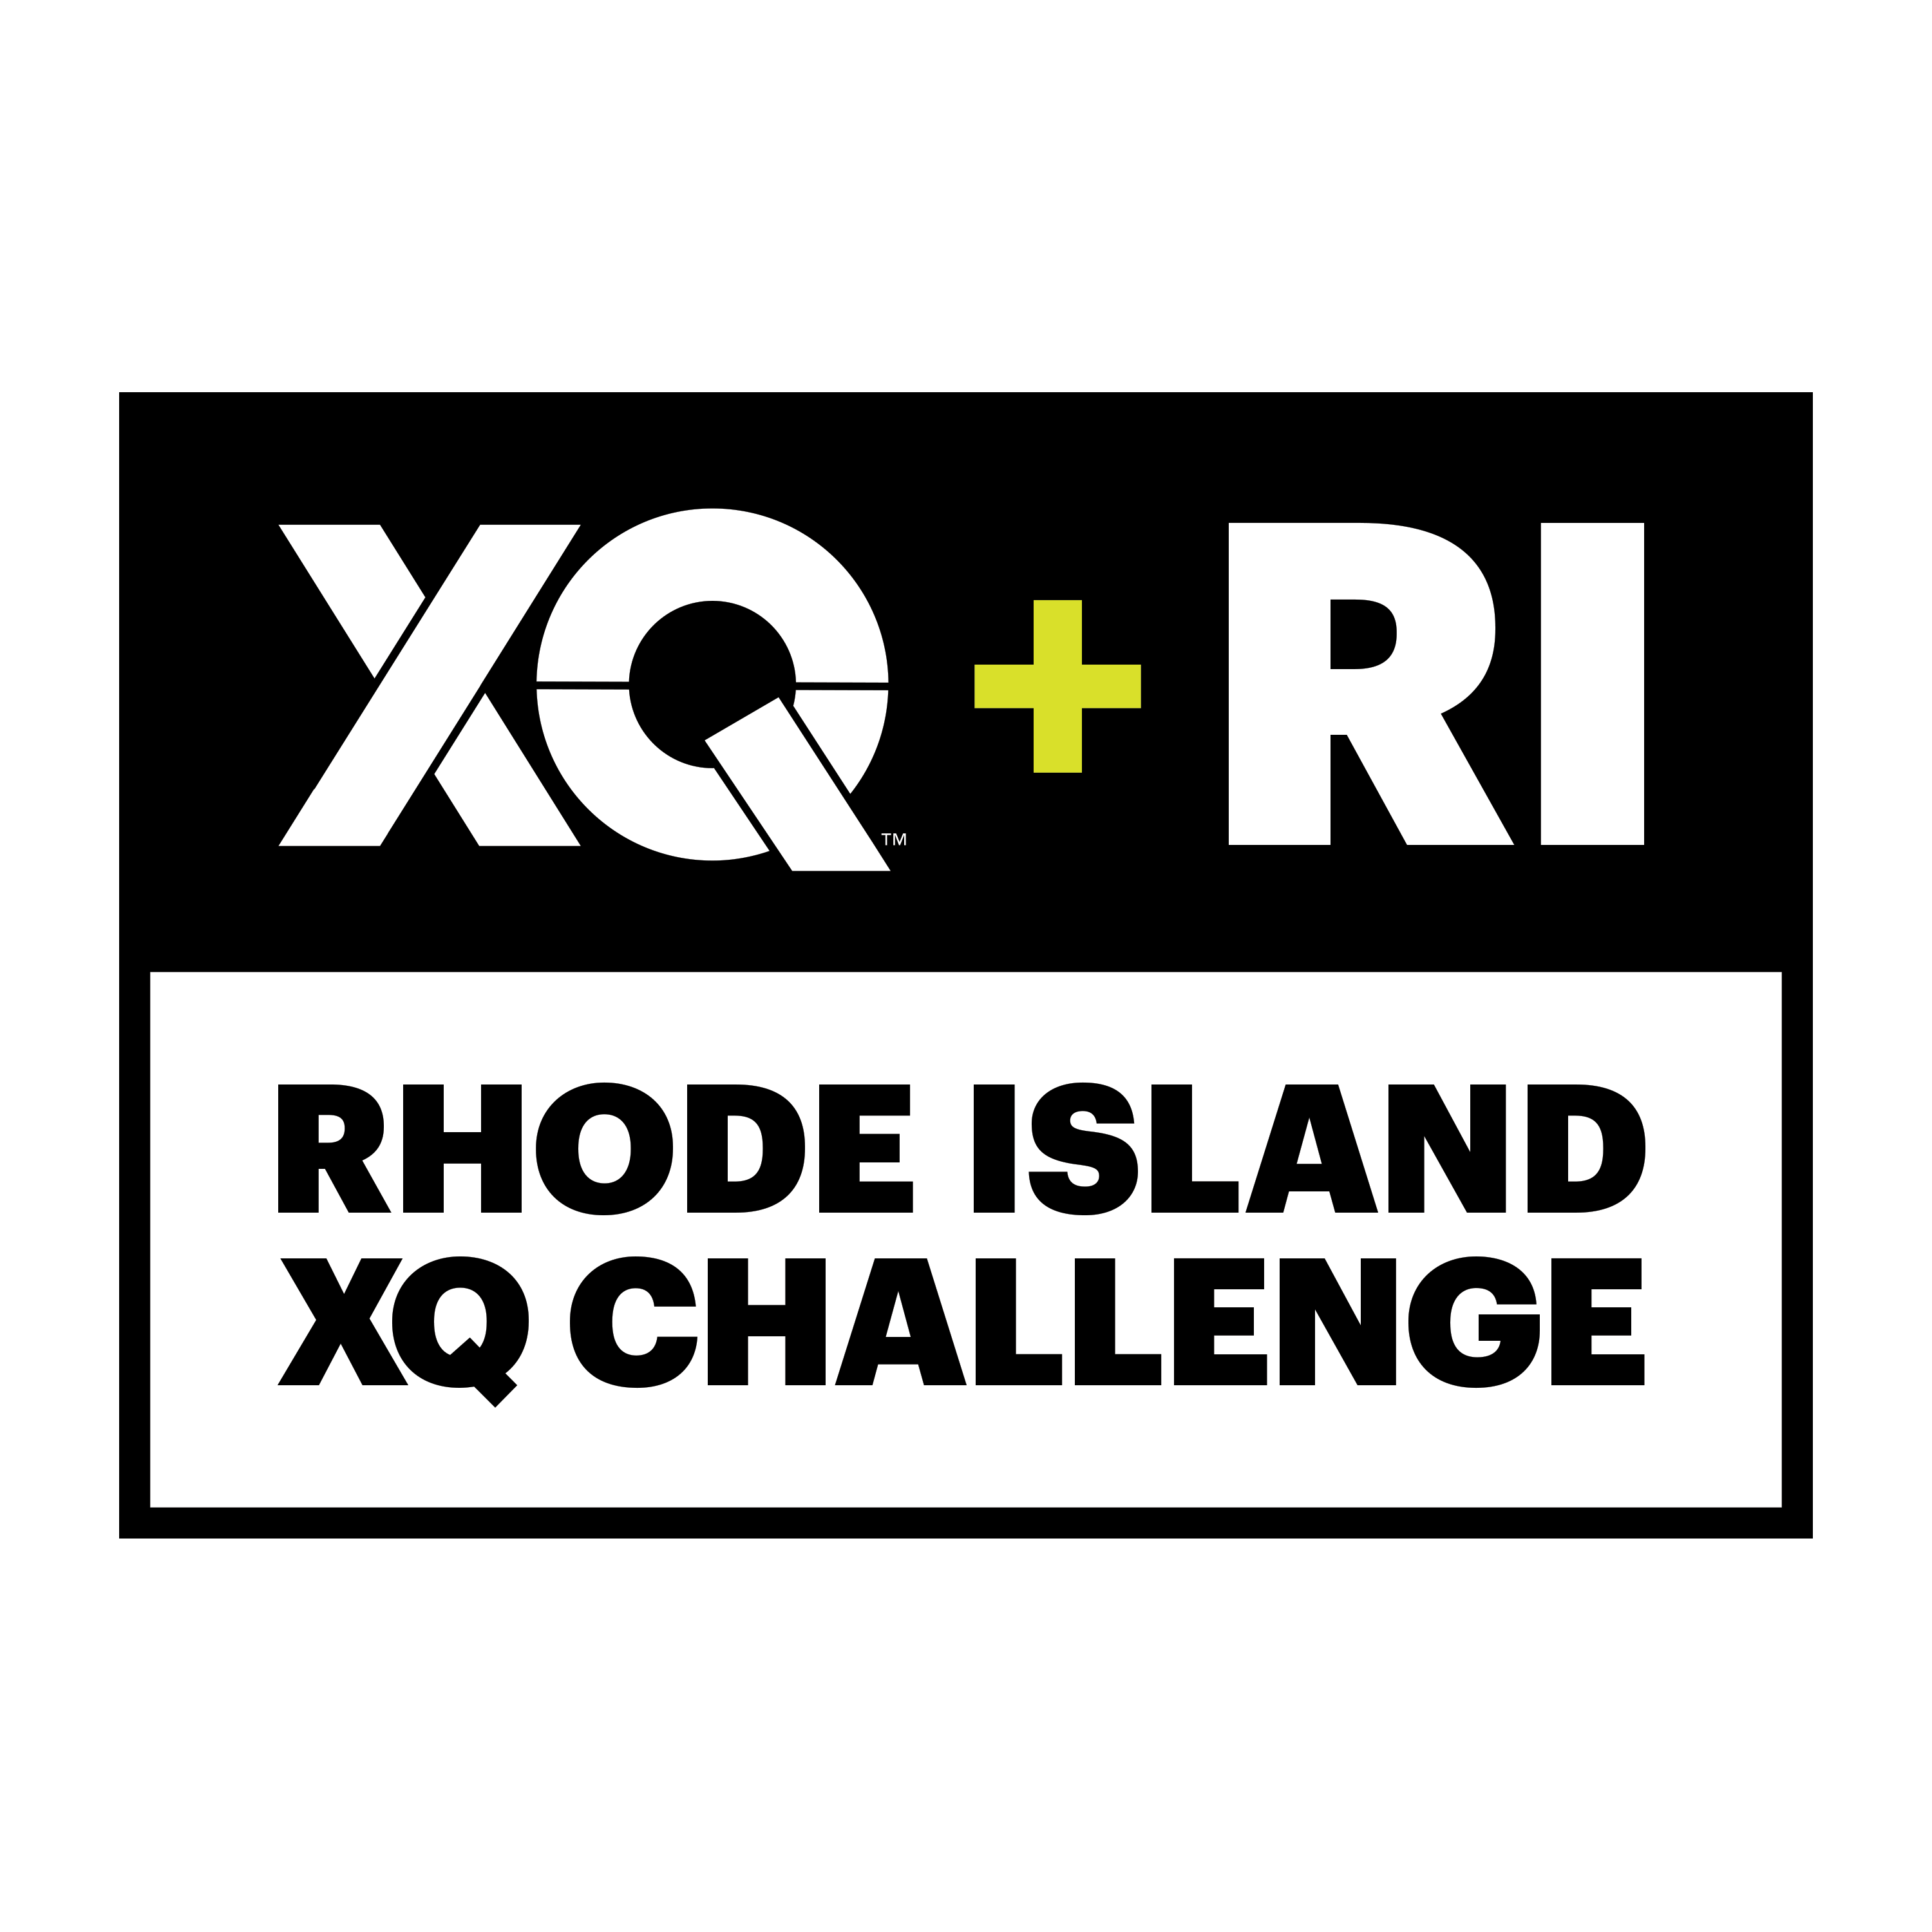 Rhode Island XQ Challenge logo